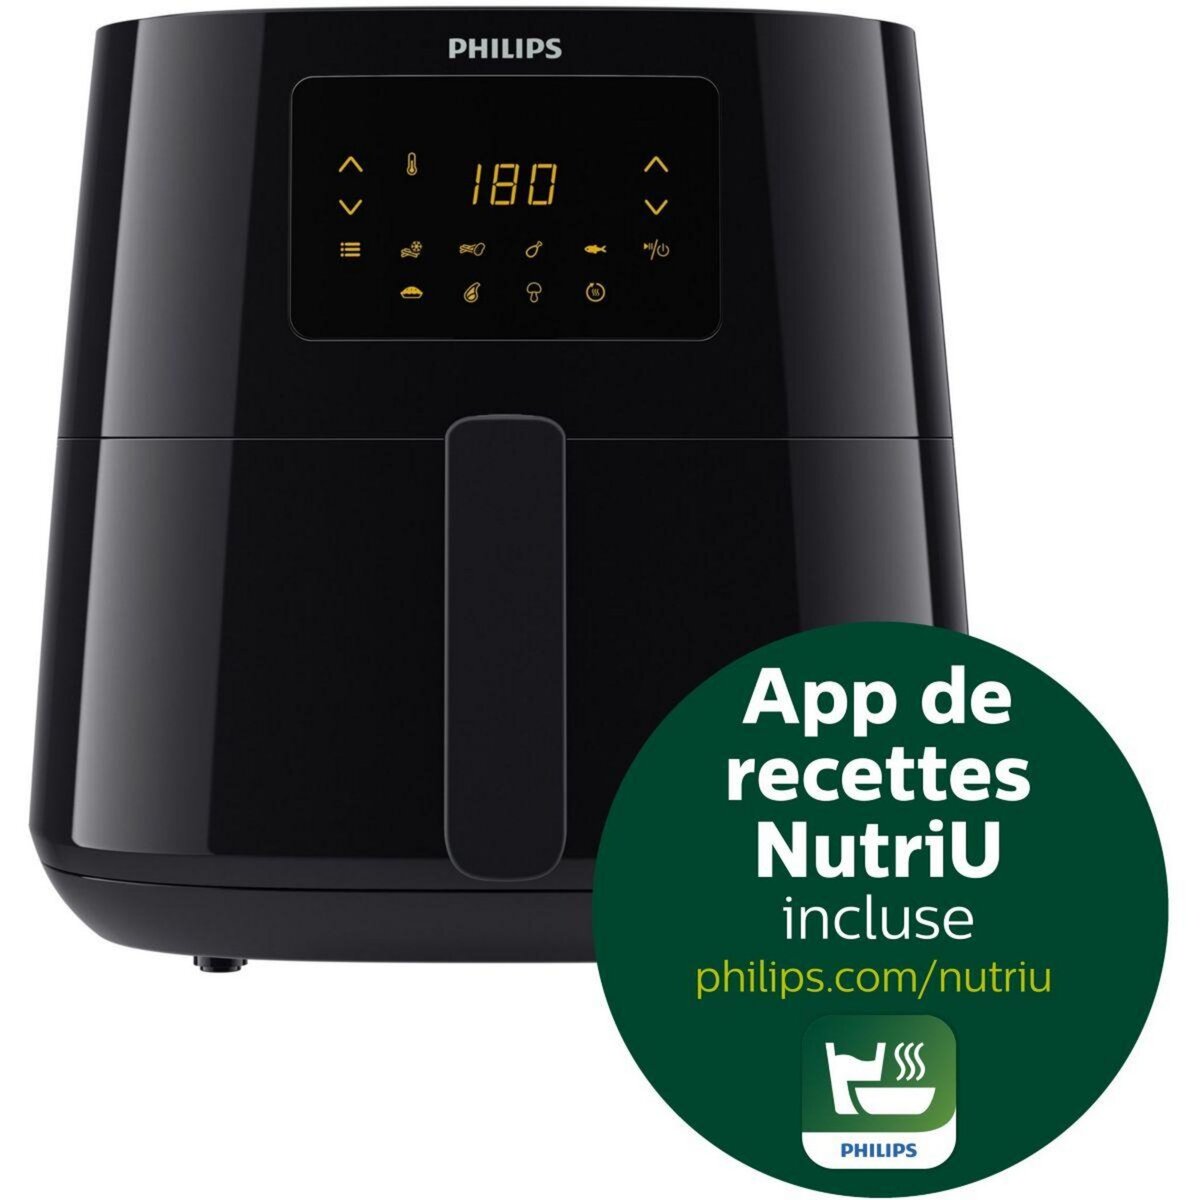 craque pour la fin d'année et propose la friteuse sans huile  Airfryer de Philips à -31% 